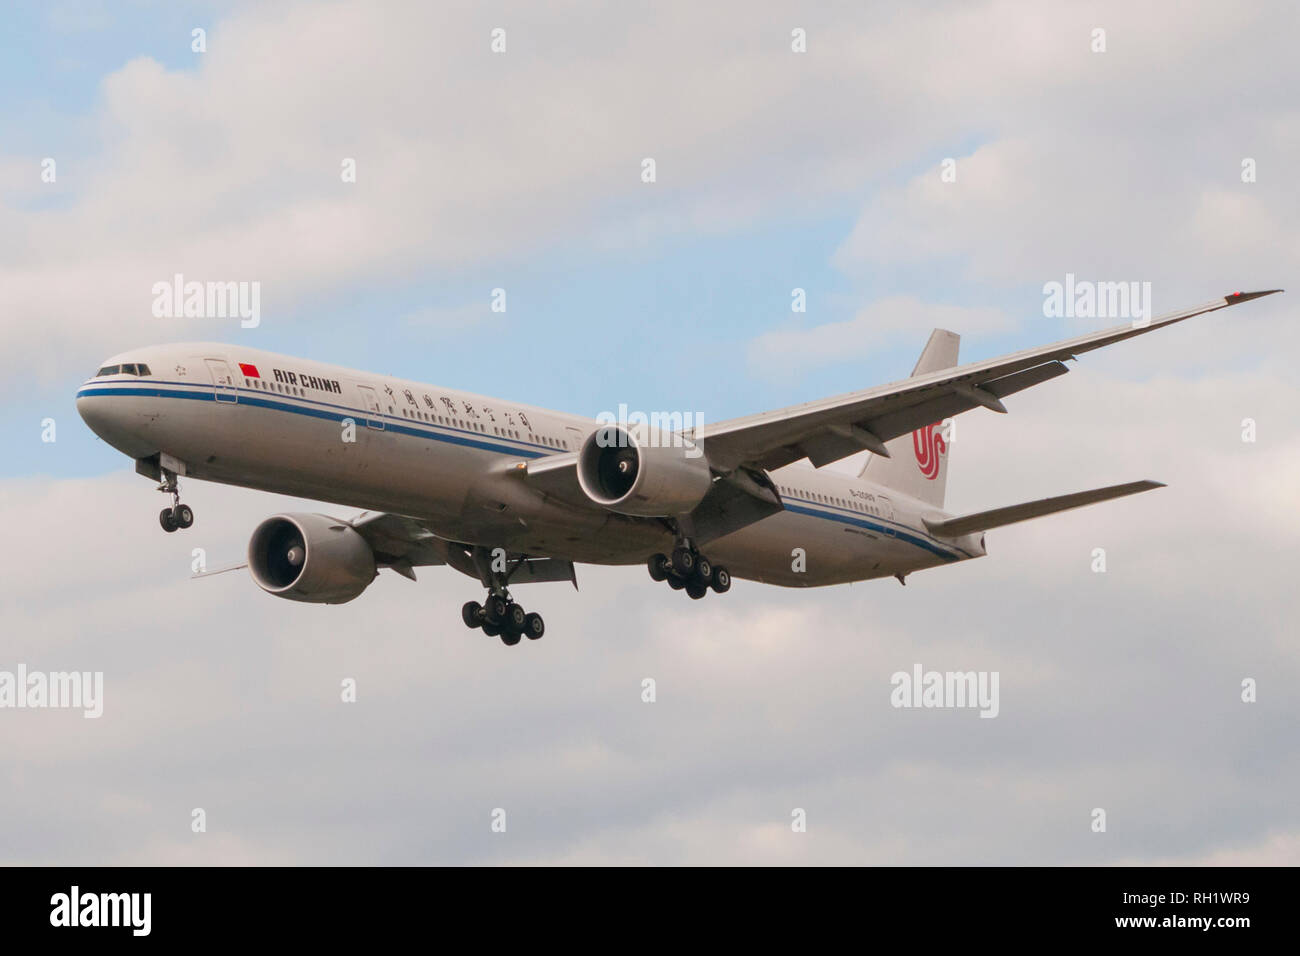 Londres, UK - 6 août 2013 - Un avion d'Air China atterrit à l'aéroport d'Heathrow à Londres Banque D'Images